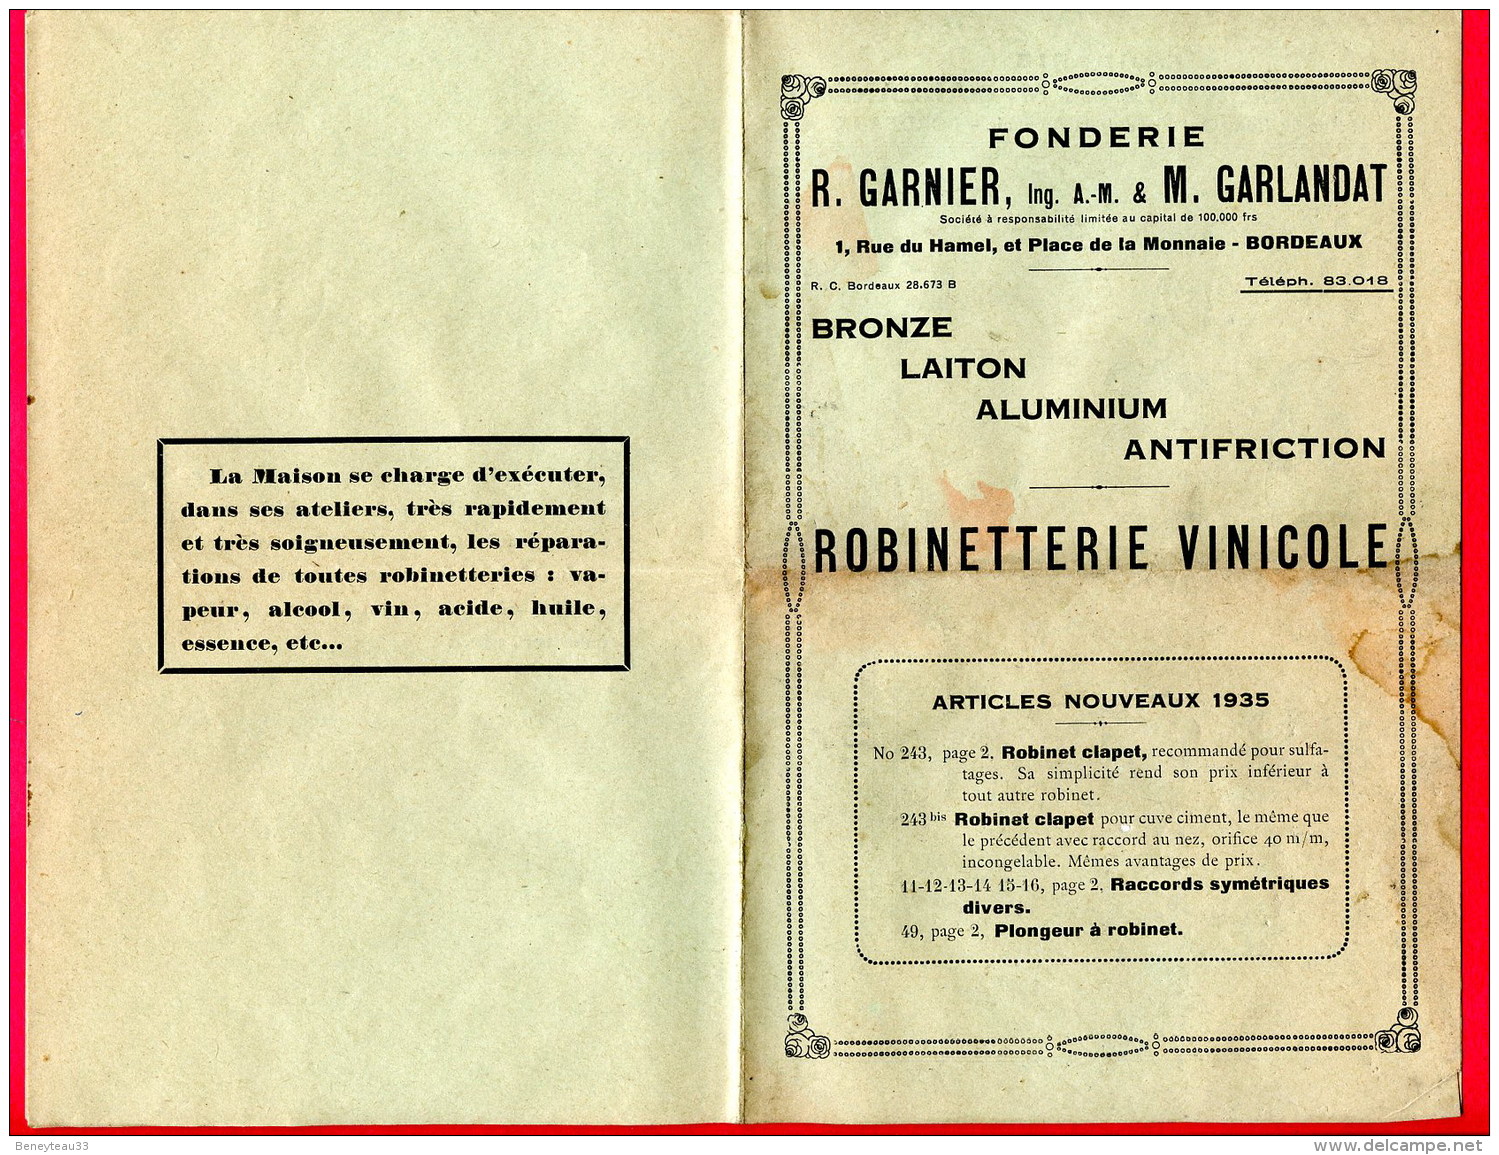 PUBLICITÉ (Réf C247) FONDERIE R. GARNIER M. GARLANDAT BORDEAUX ROBINETTERIE VINICOLE - Publicités